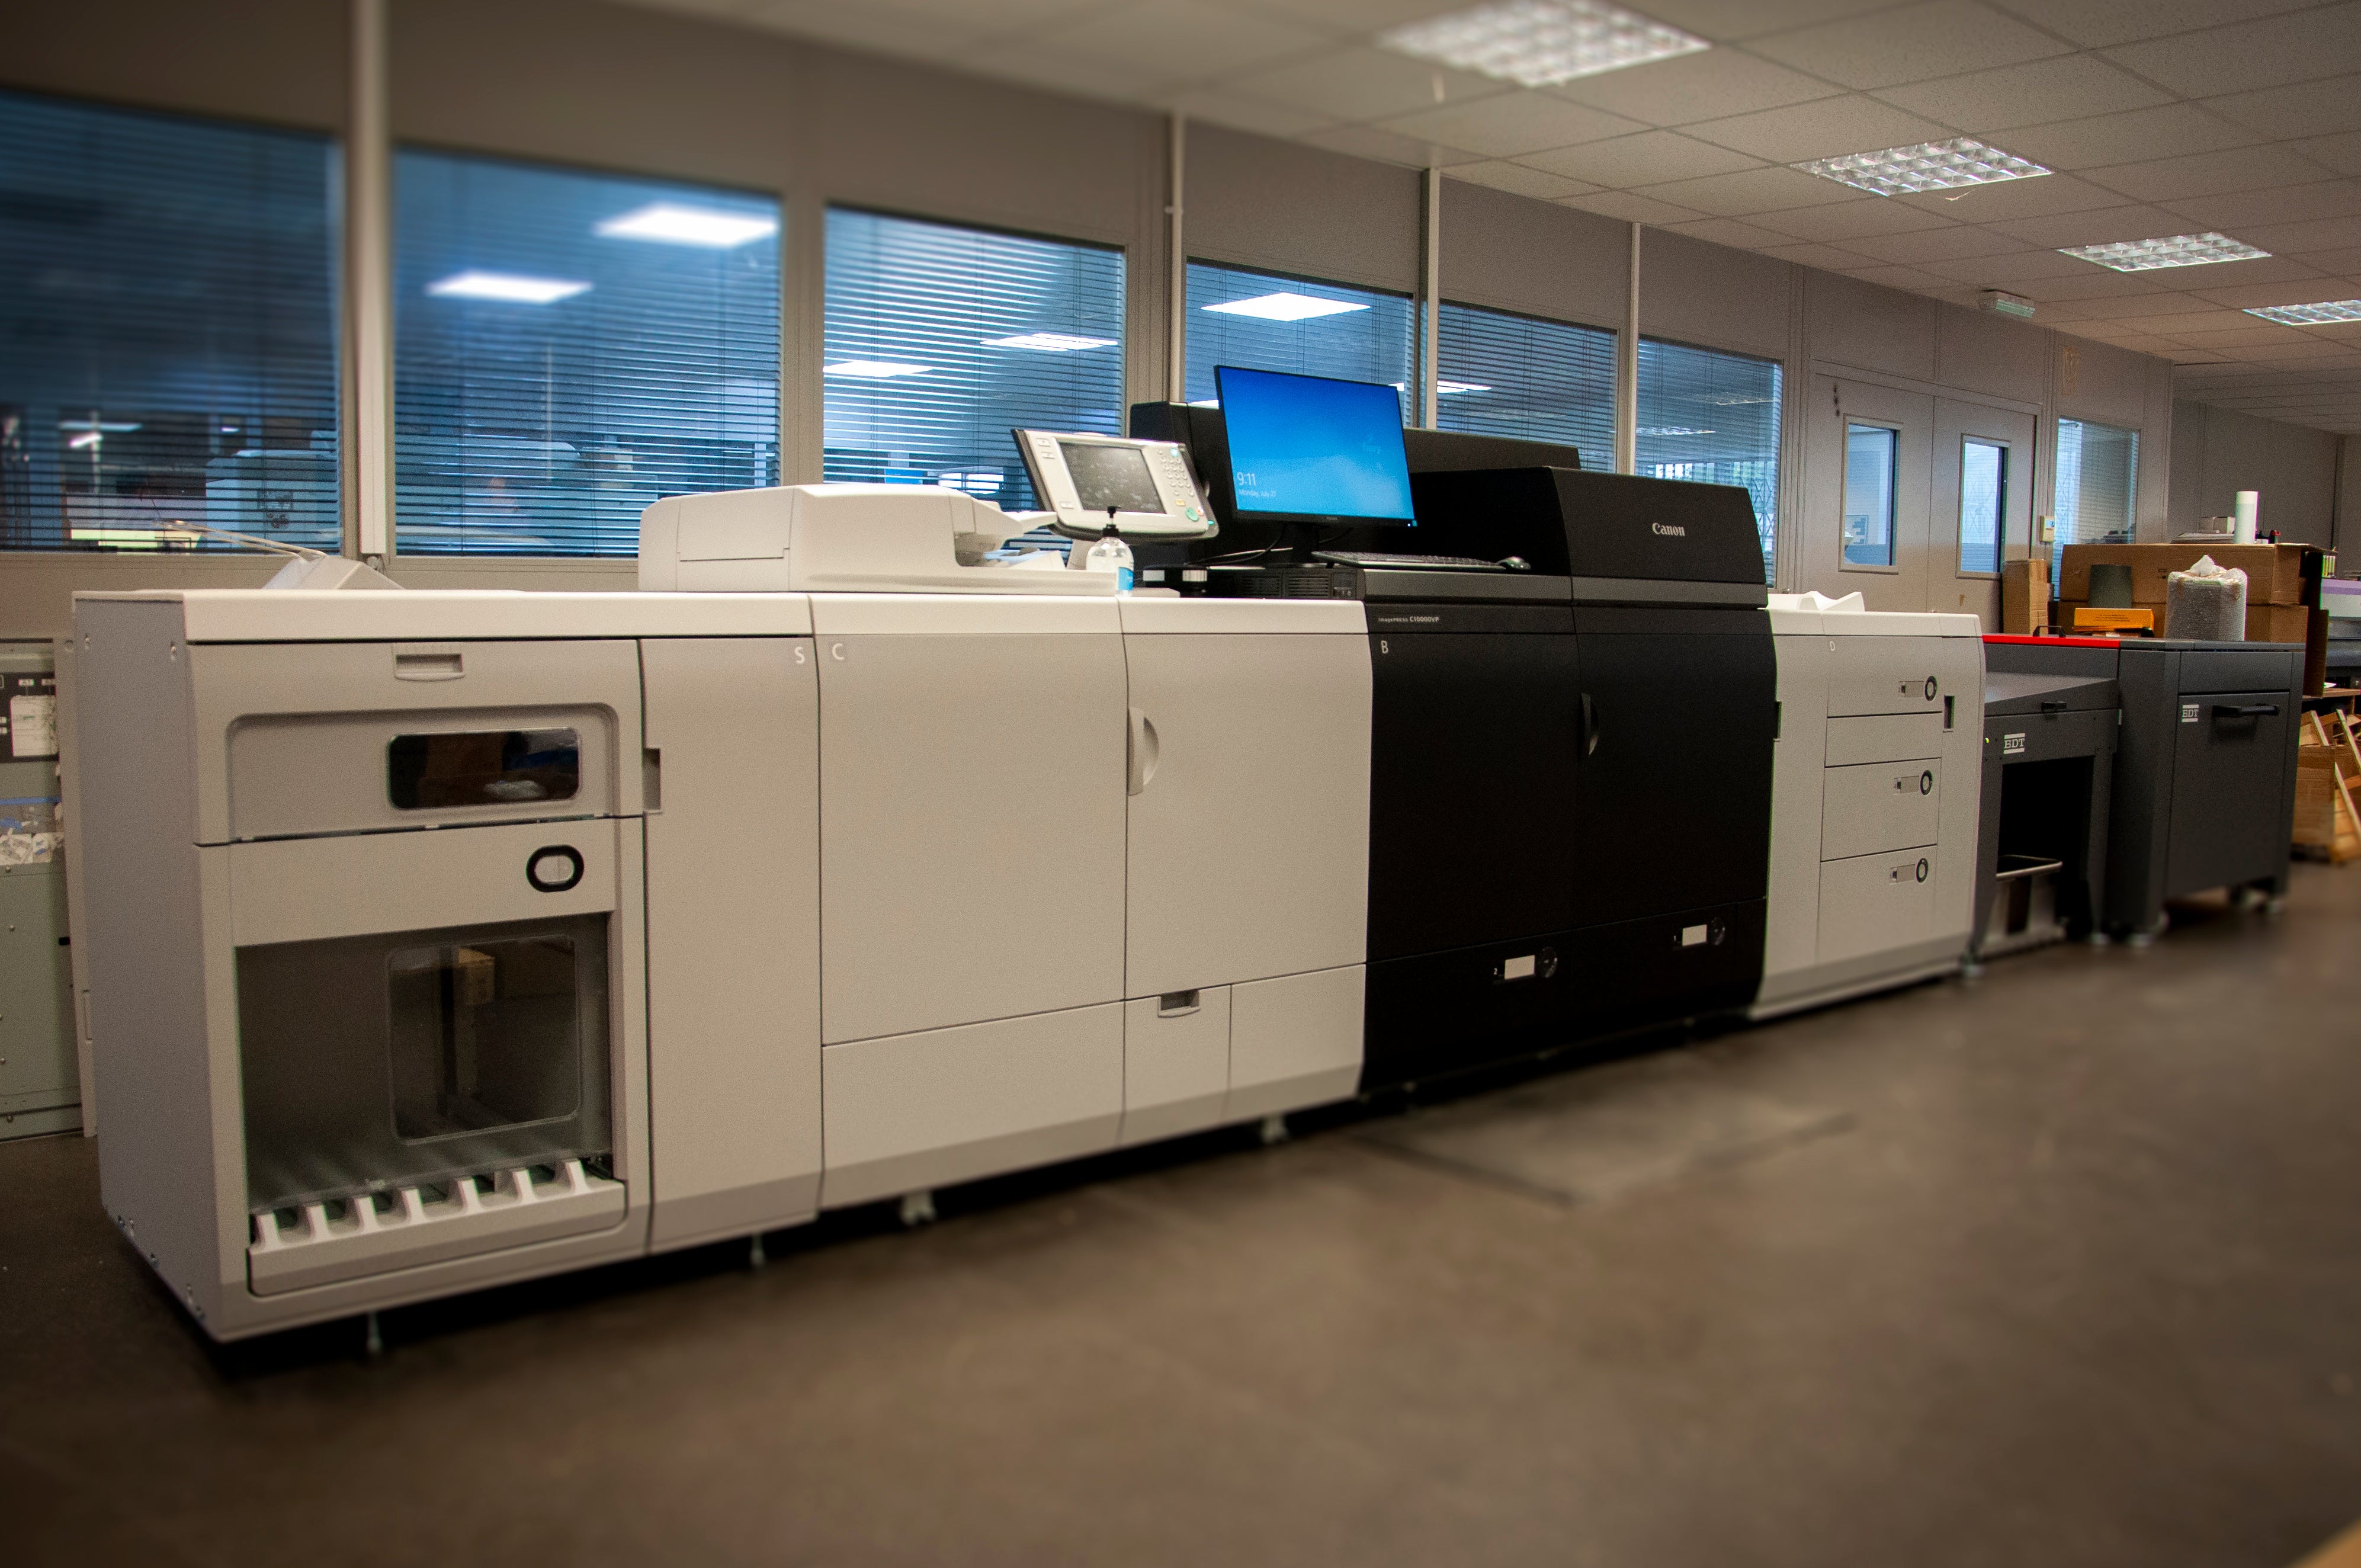 Ruddocks digital printer machine